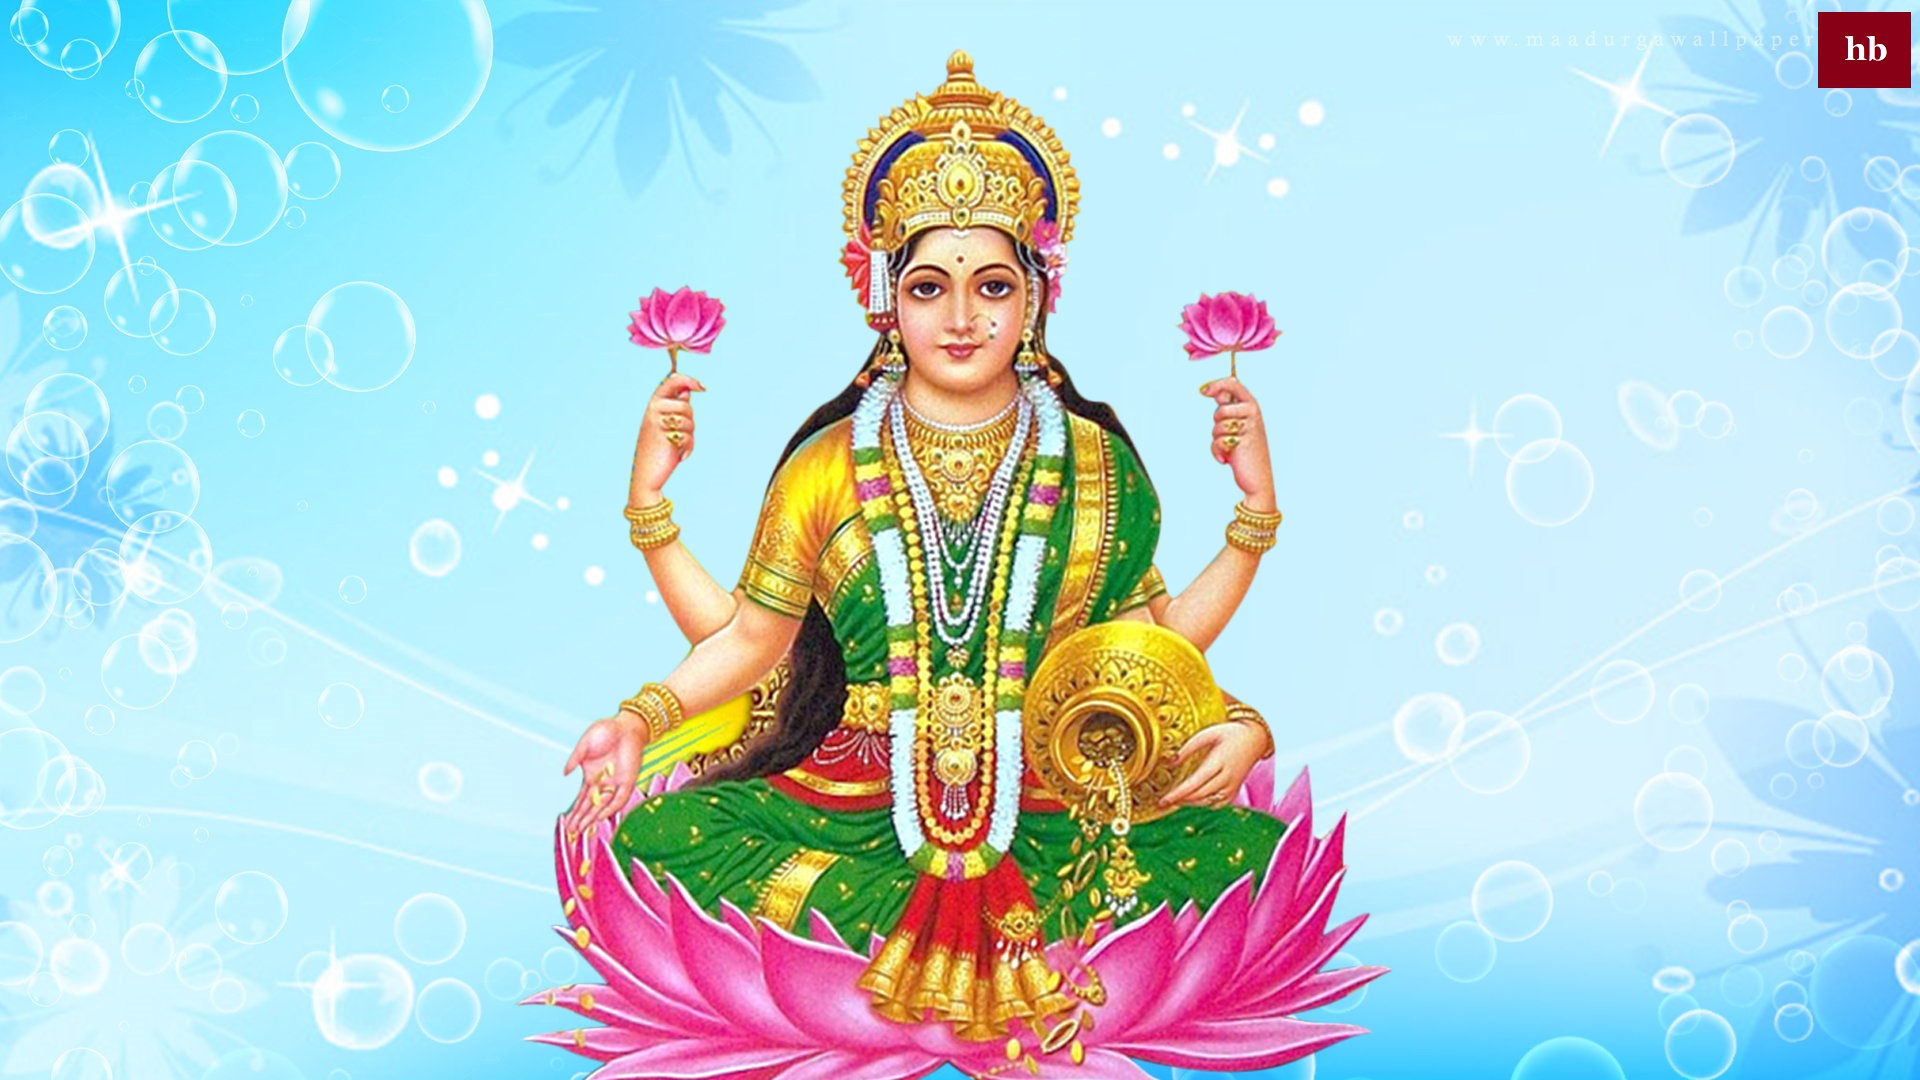 Goddess Laxmi images